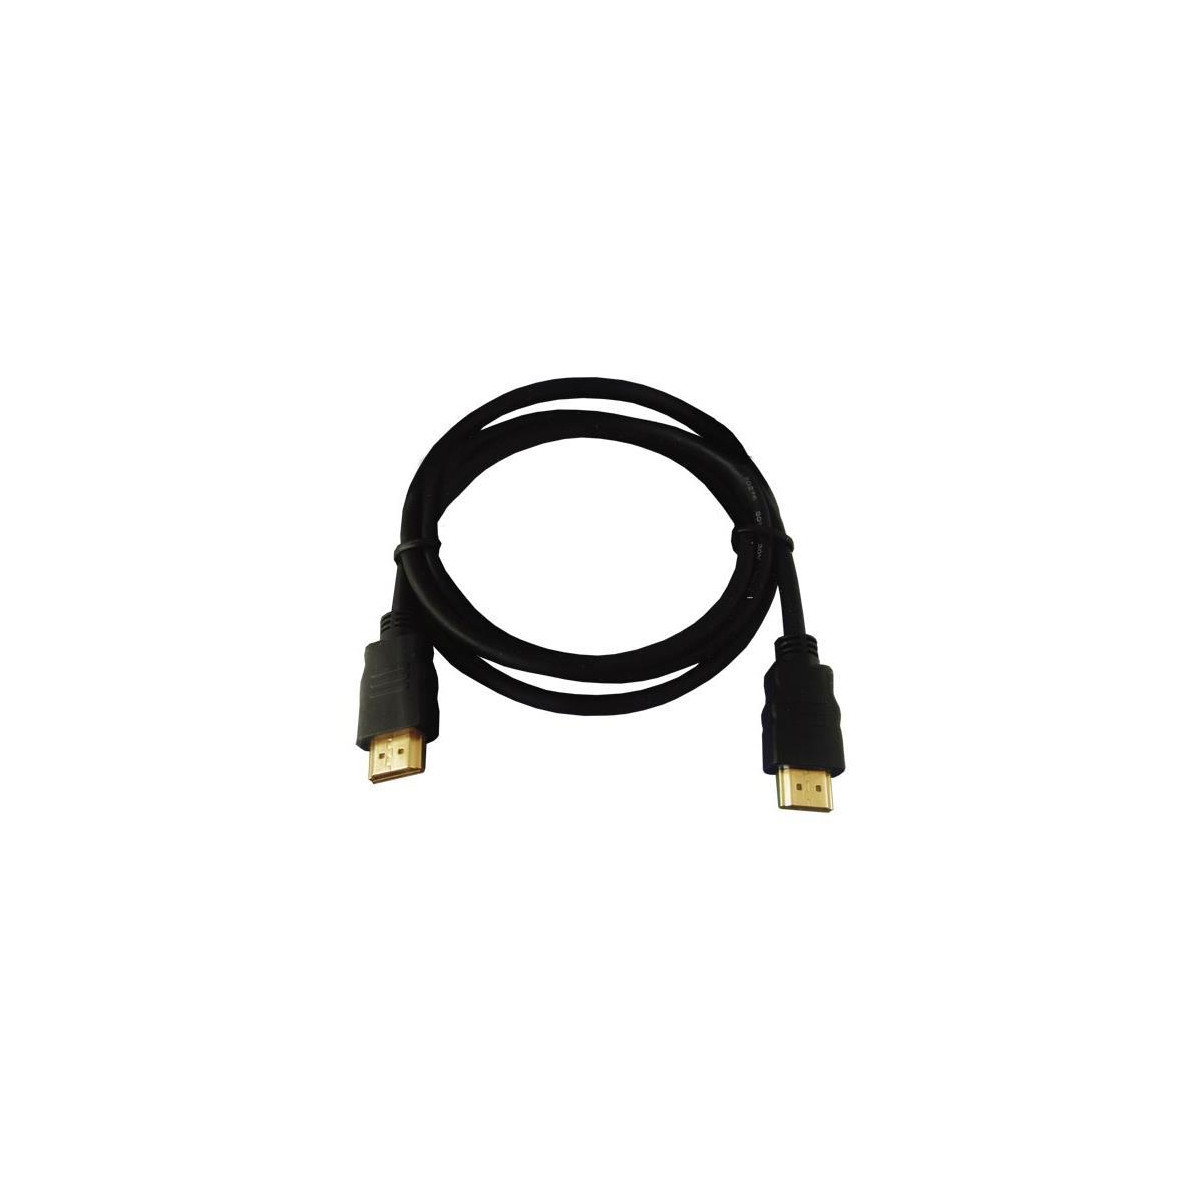 Kabel TIPA HDMI 1,5m